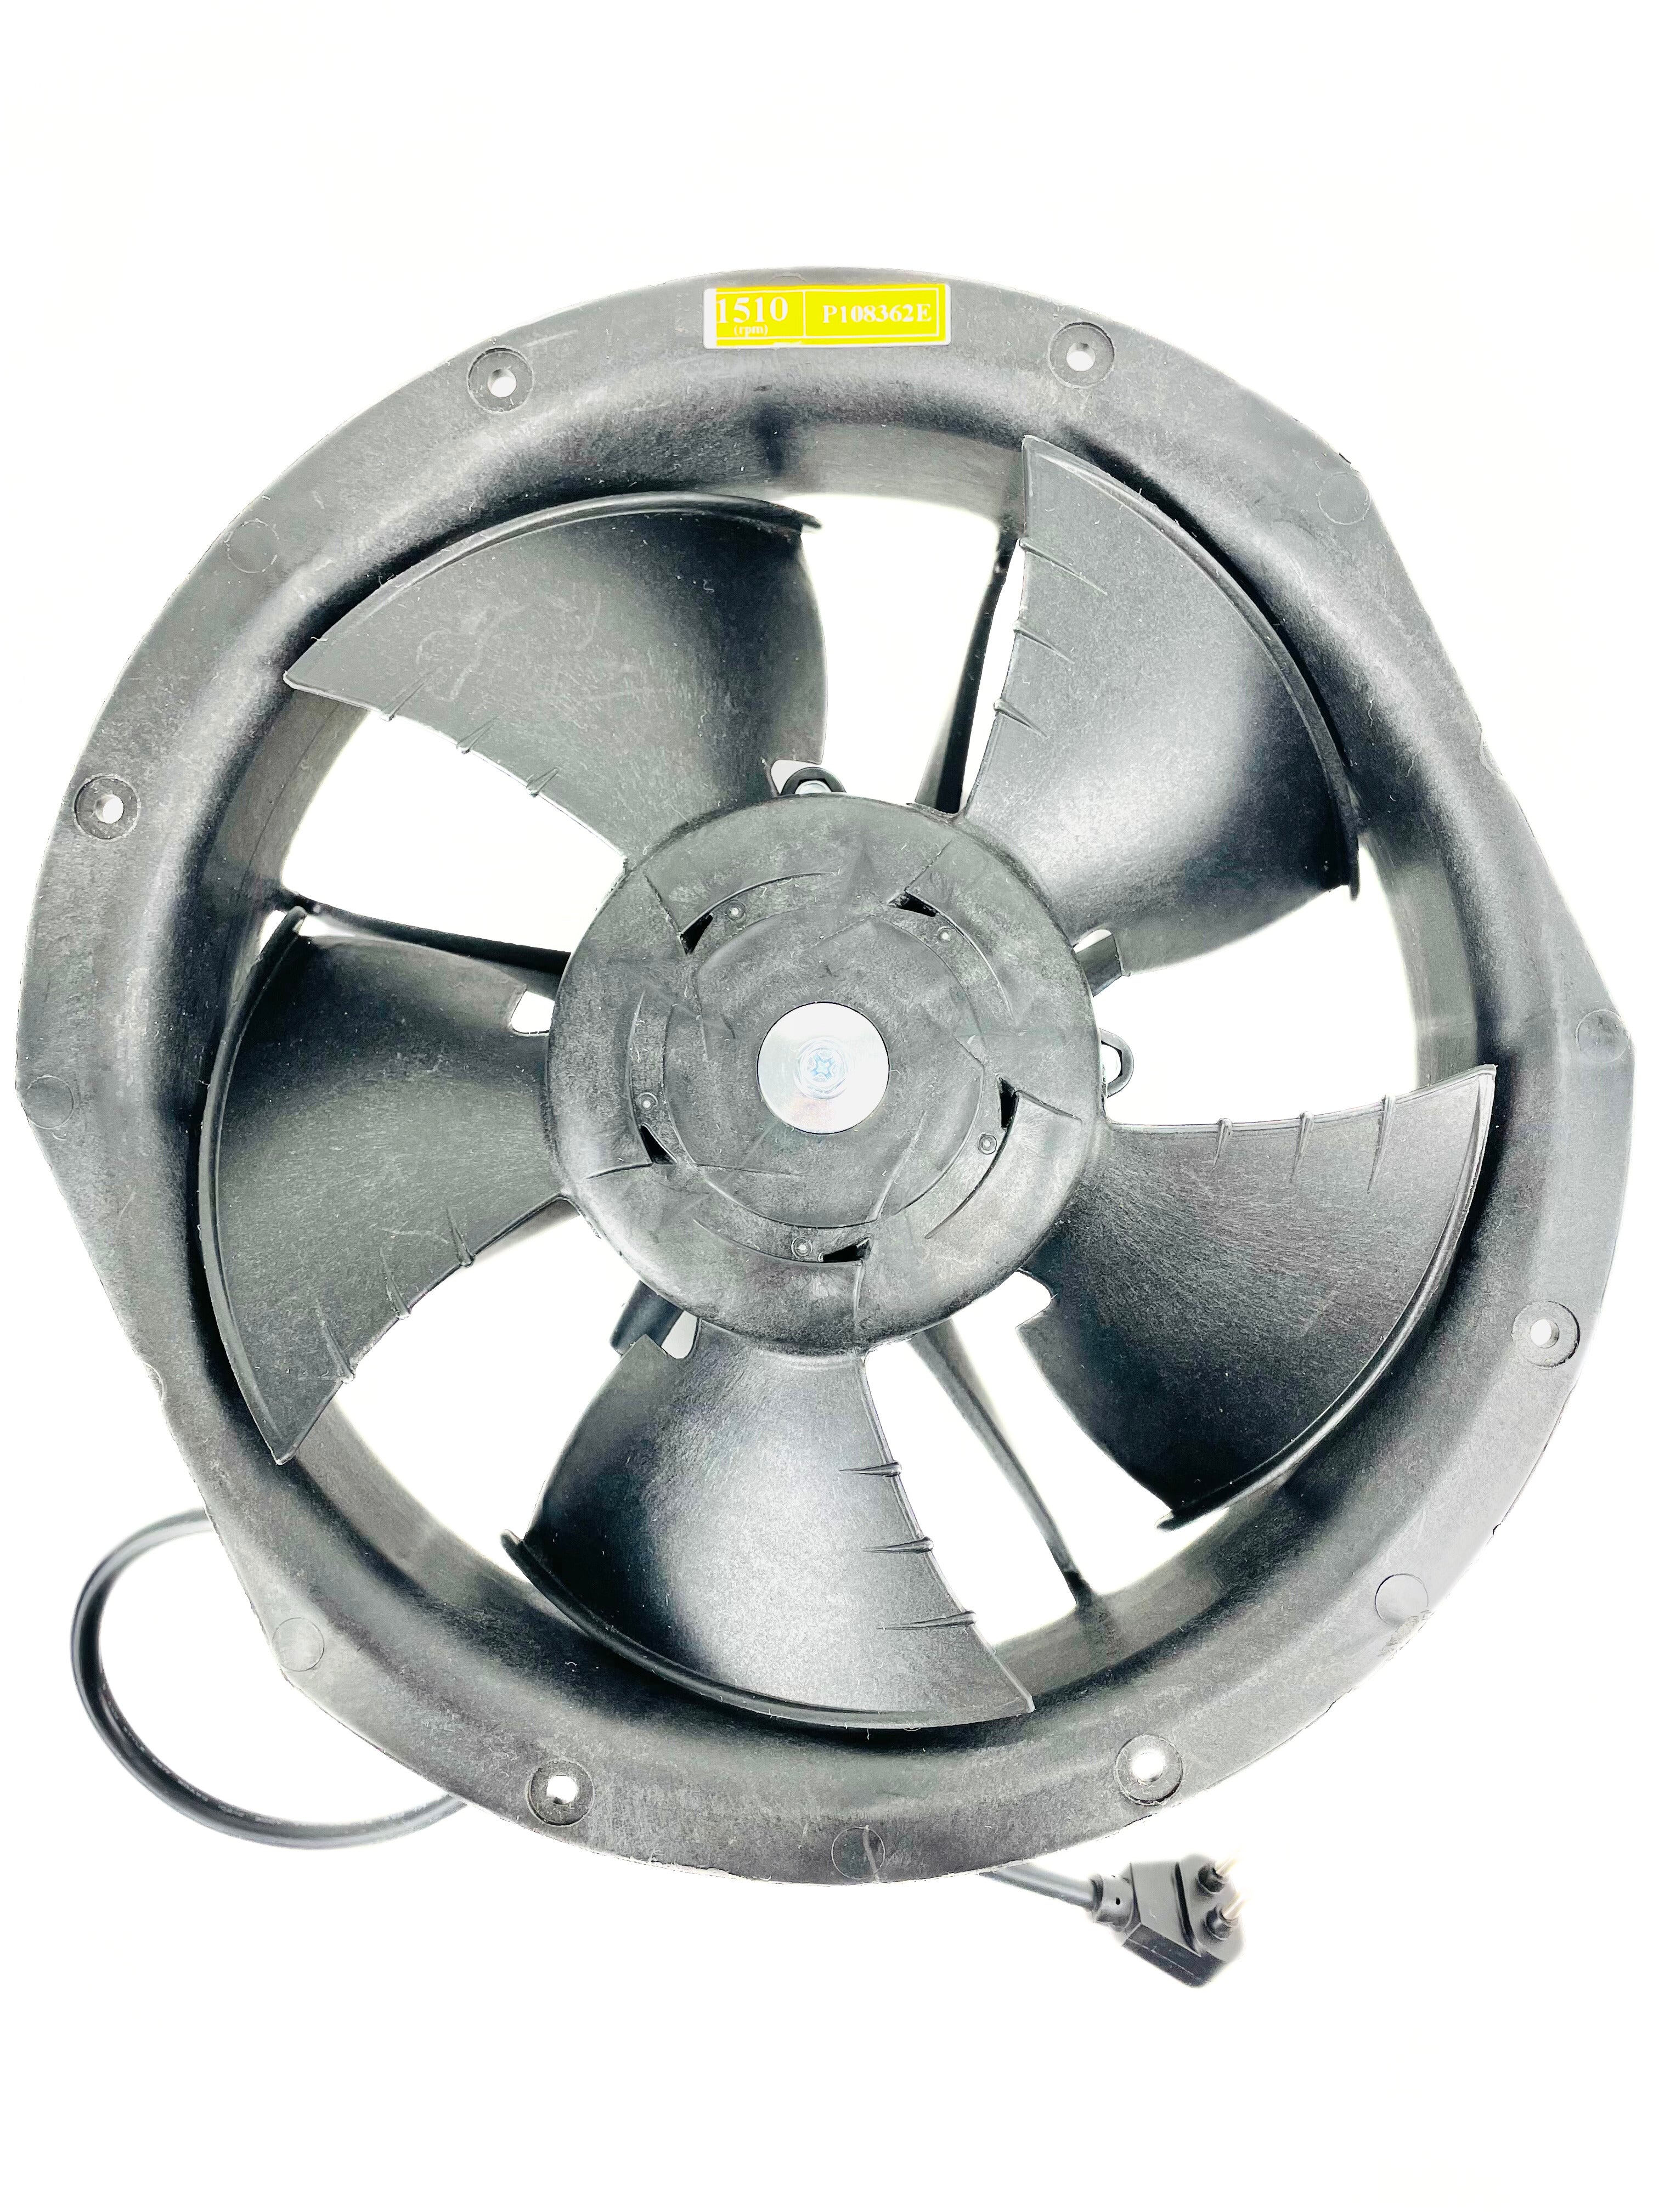 Hillphoenix 120V 1510 RPM Fan Motor P108362E